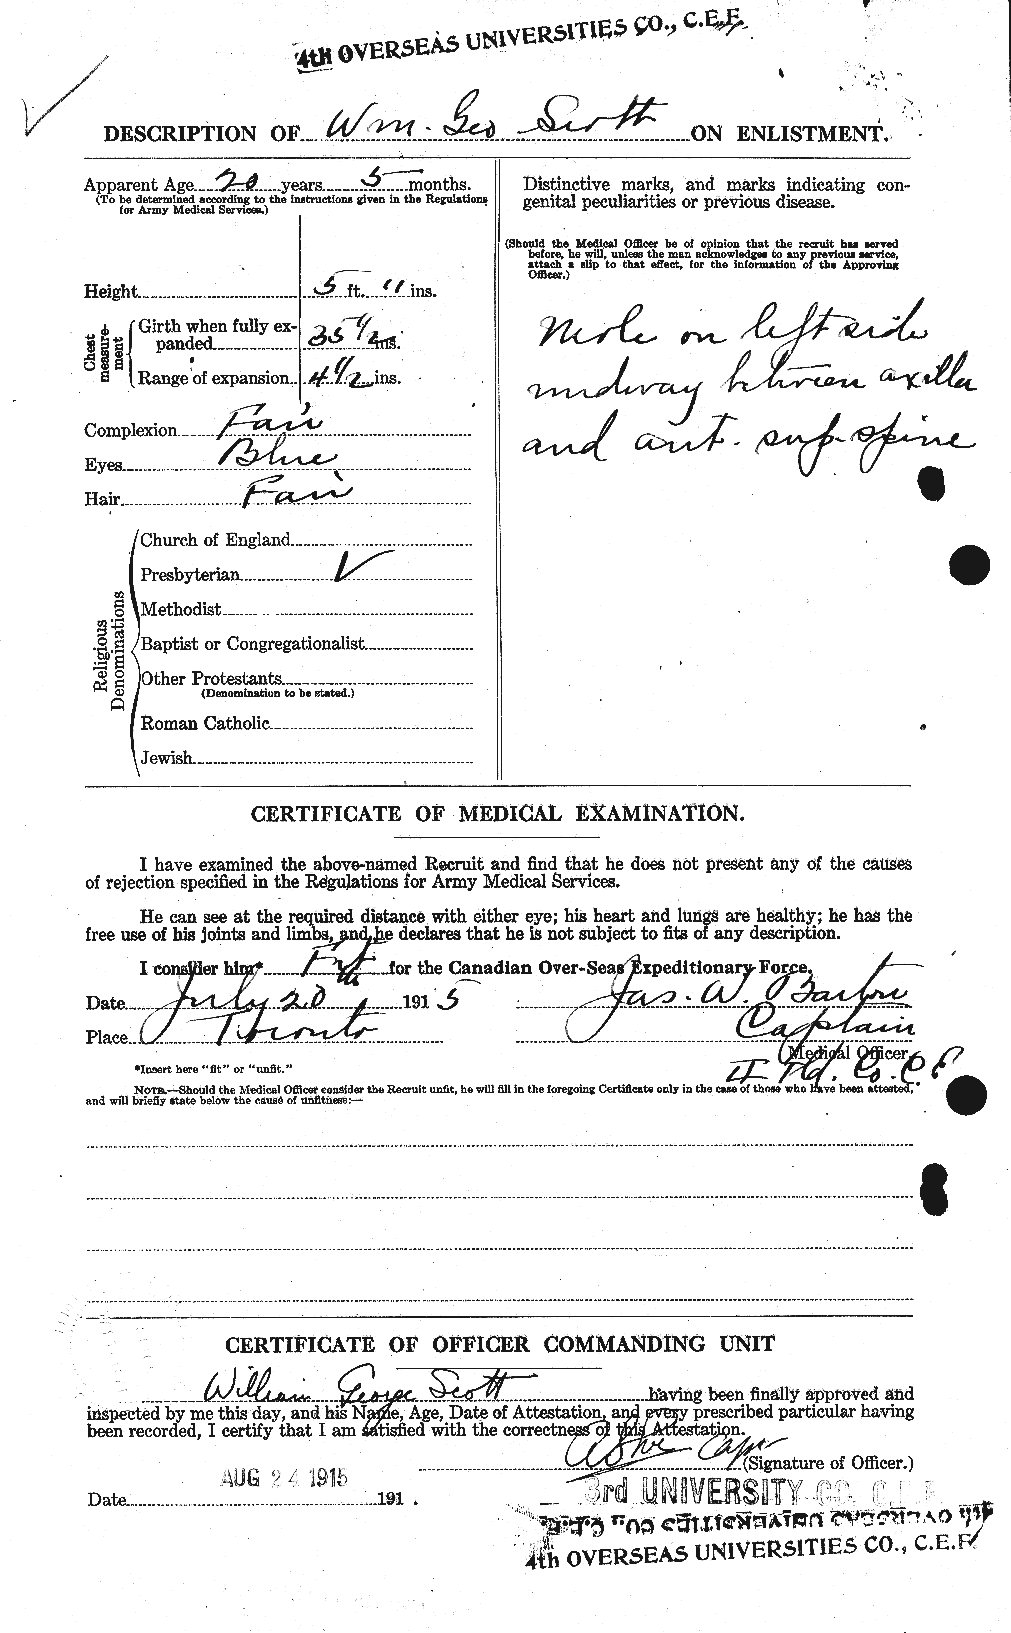 Dossiers du Personnel de la Première Guerre mondiale - CEC 087017b